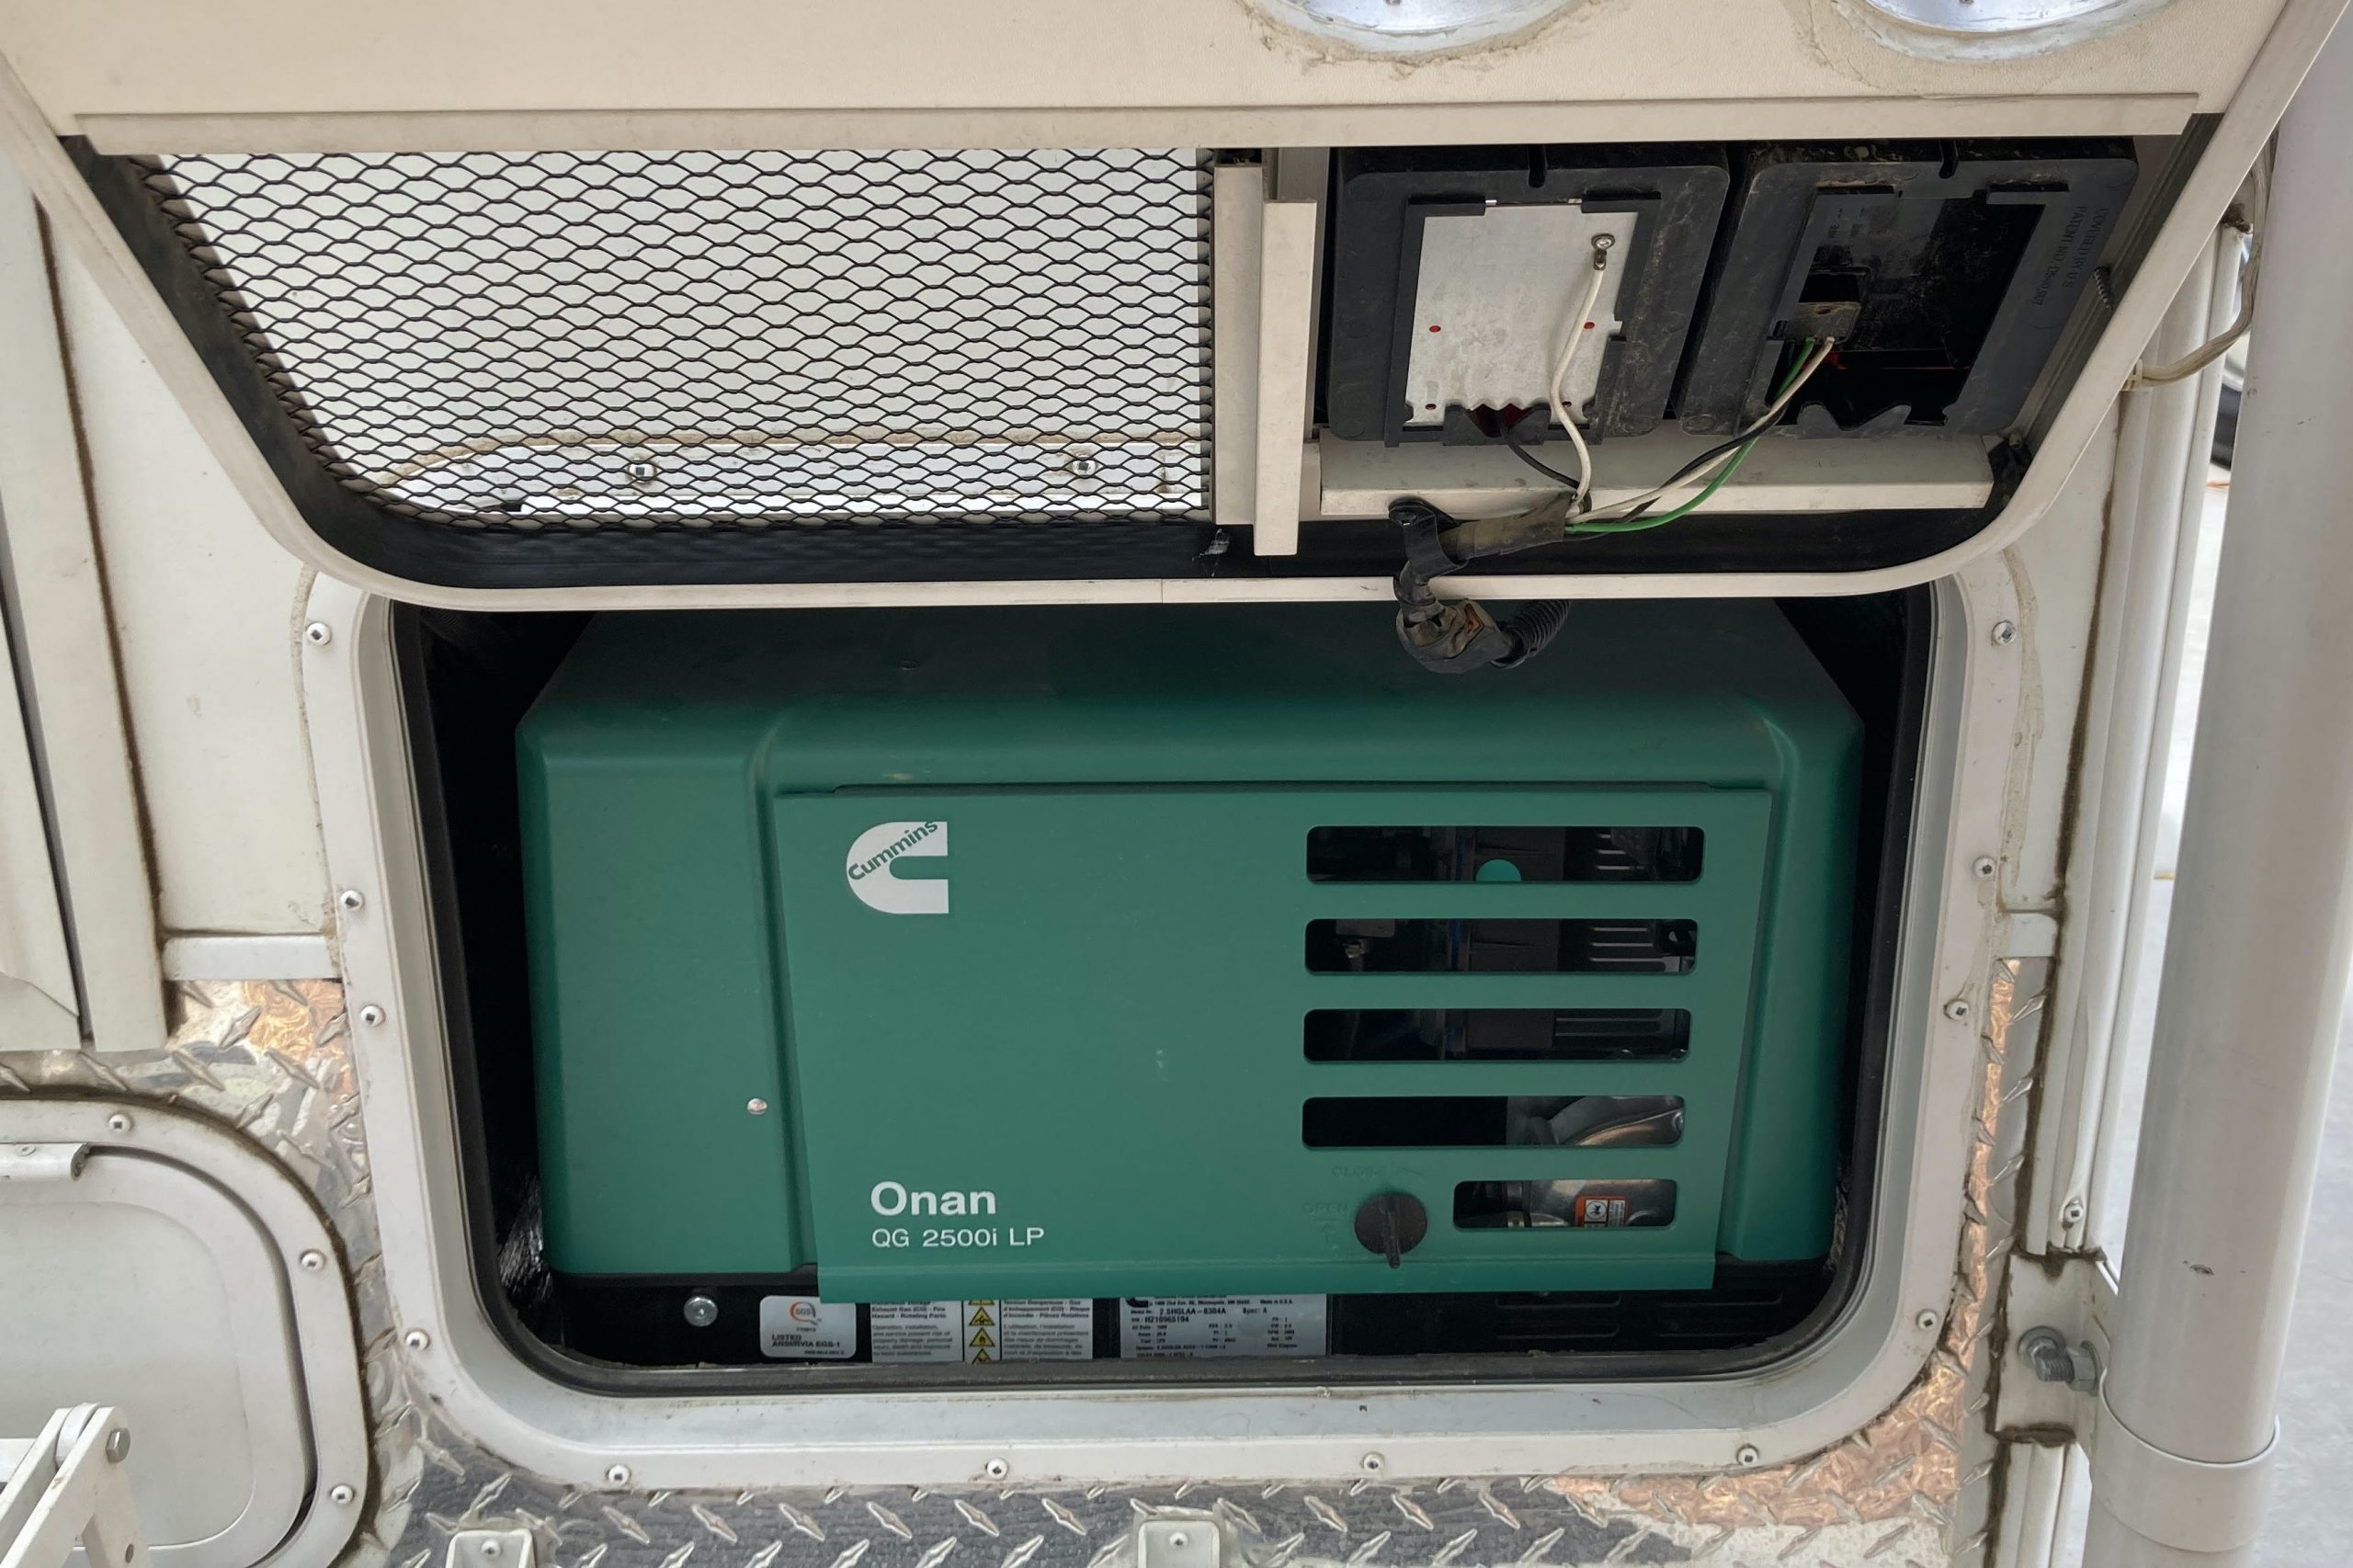 Onan Generator Features